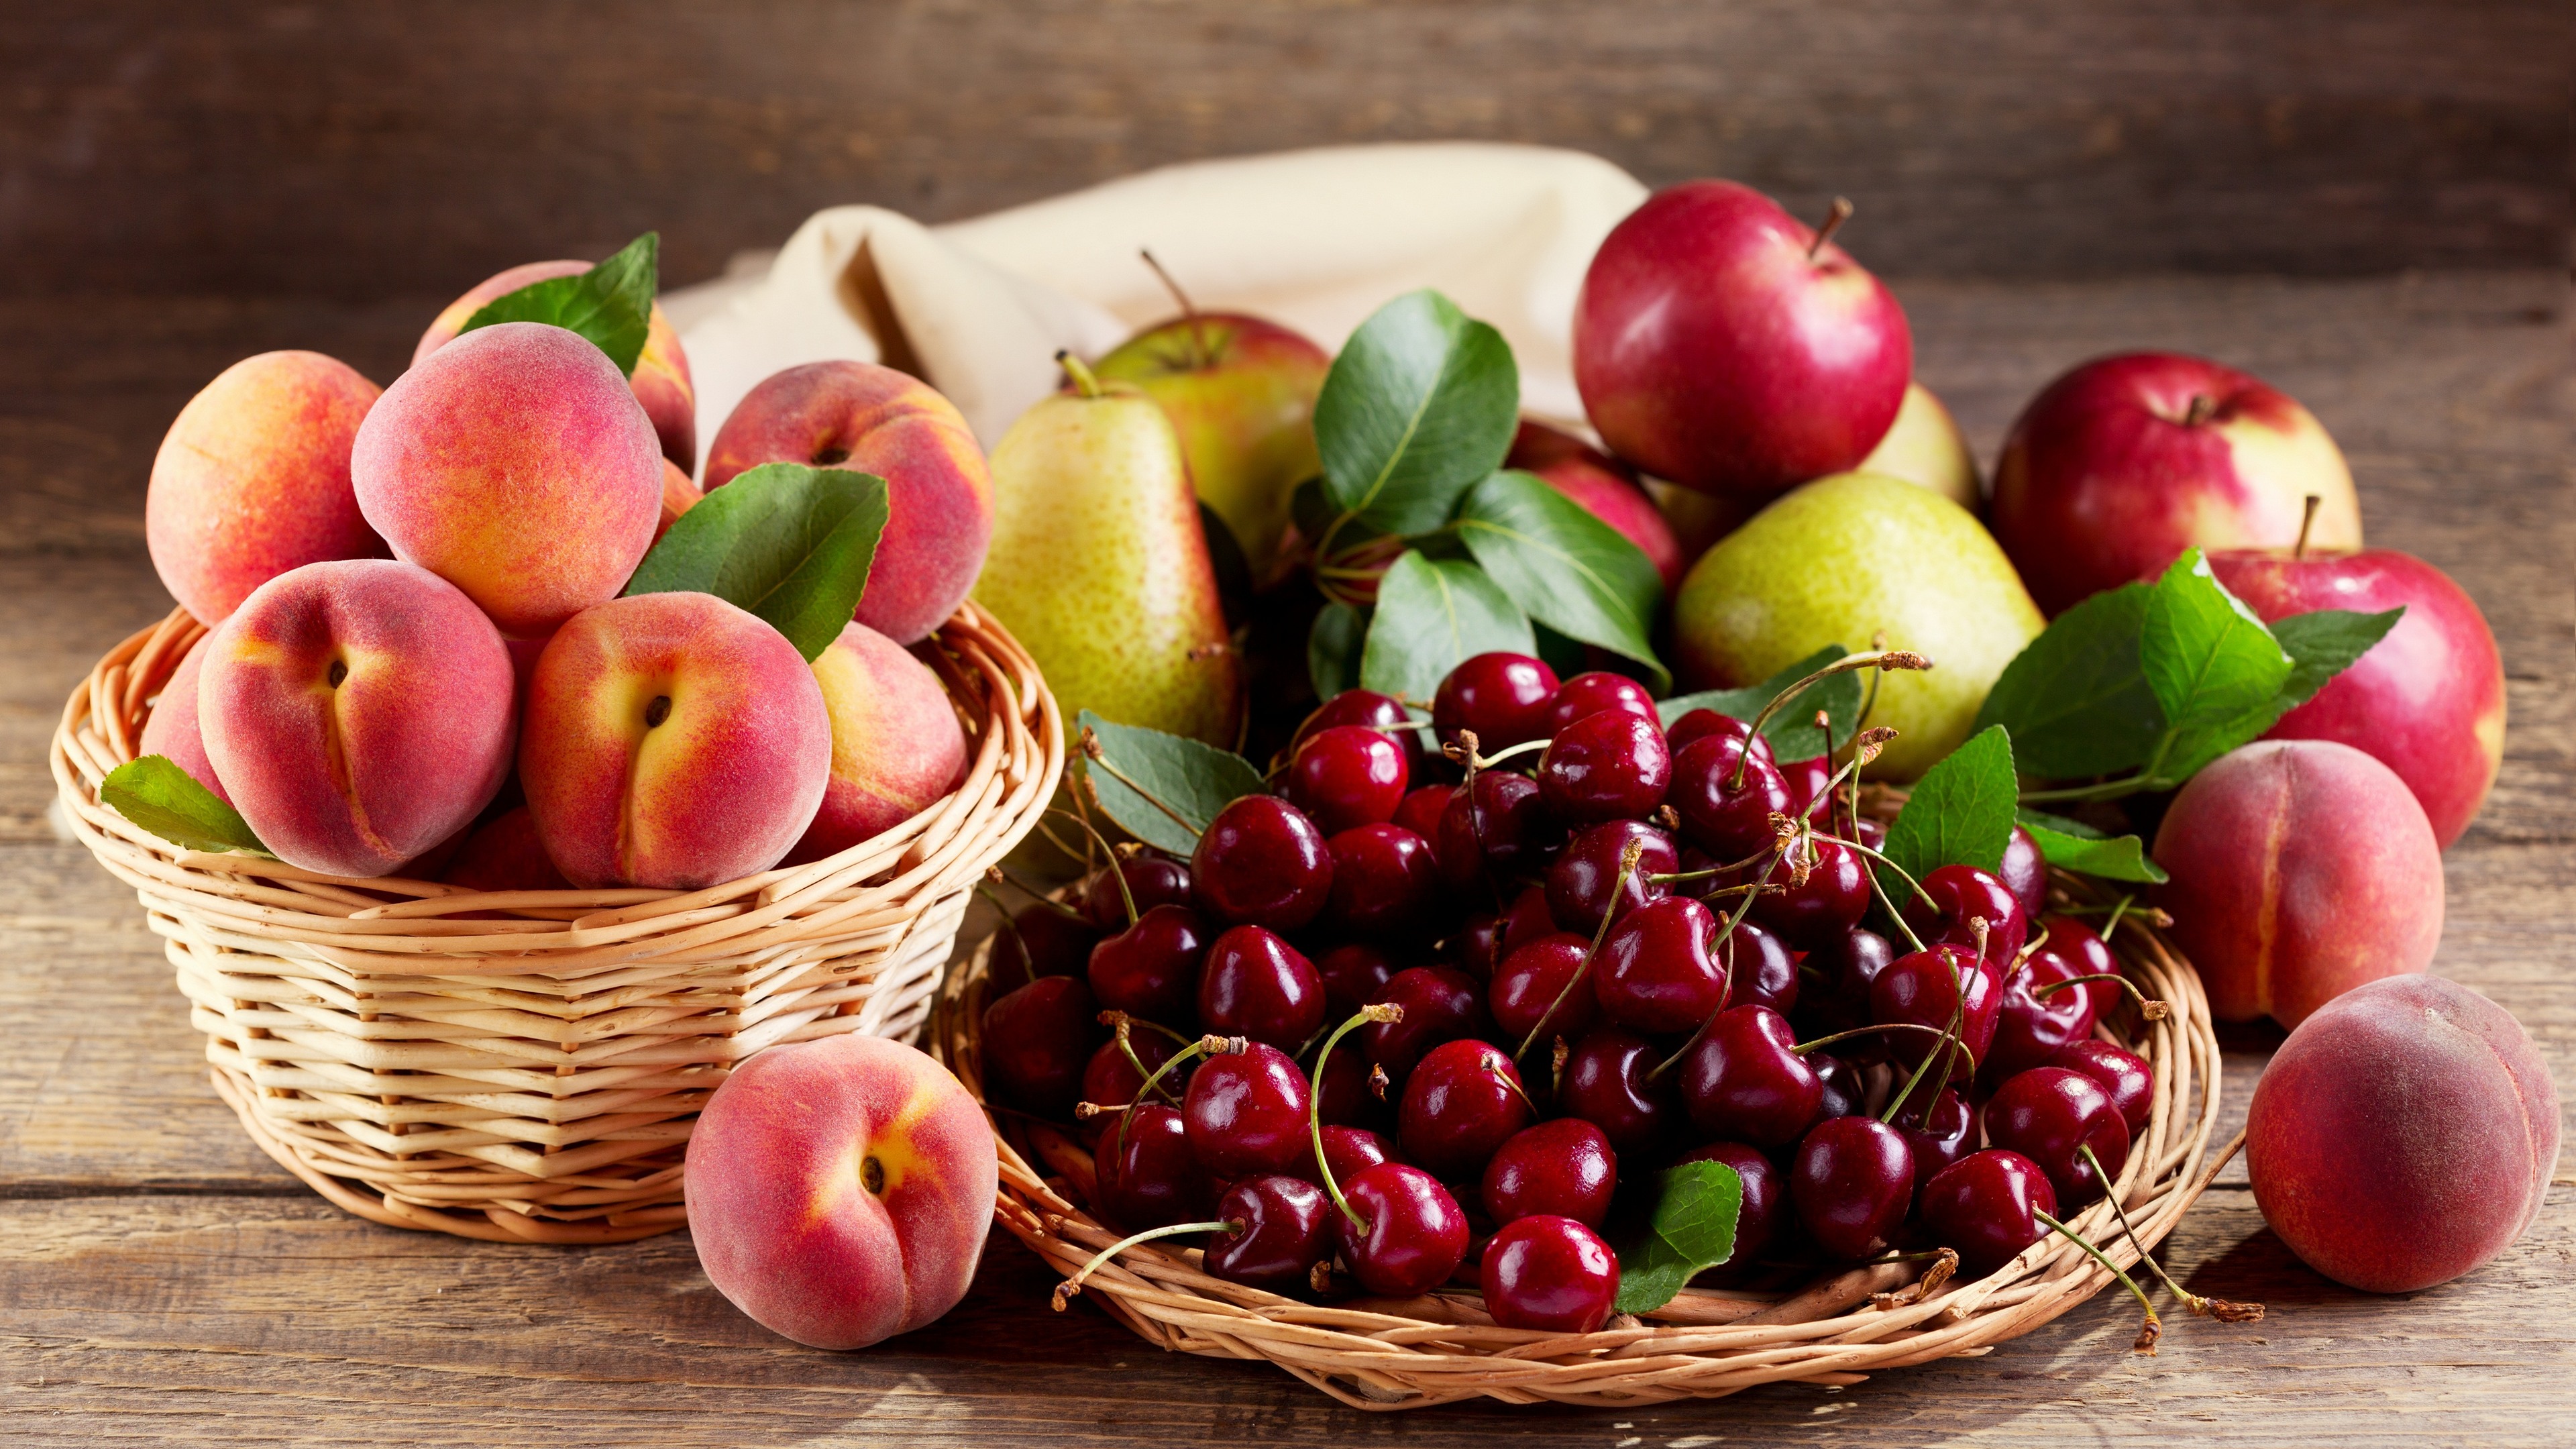 11 хитростей, которые могут помочь сохранить фрукты свежими надолго